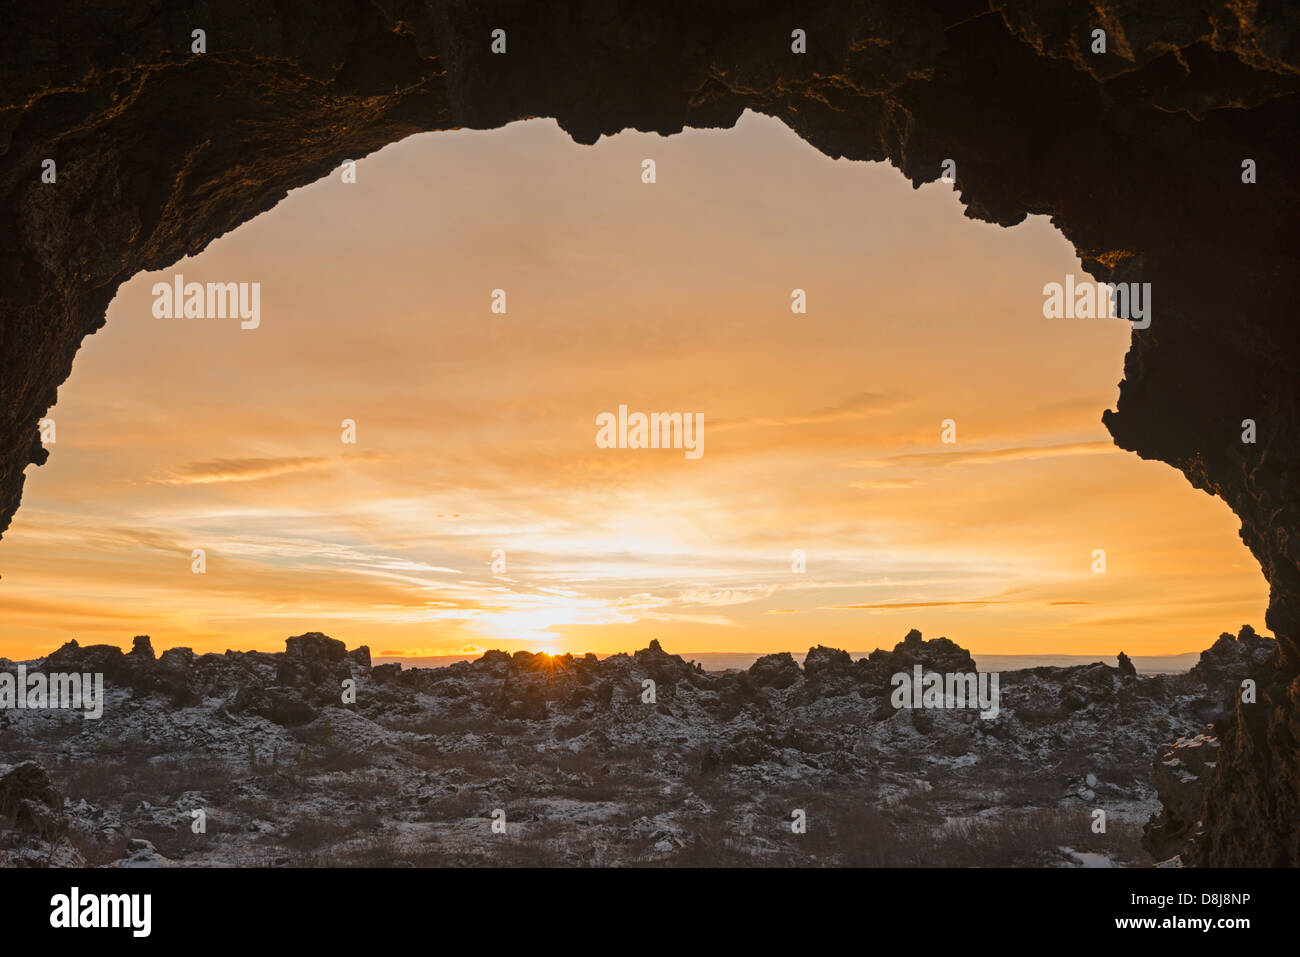 Europe, Iceland, Myvatn, sunset Stock Photo